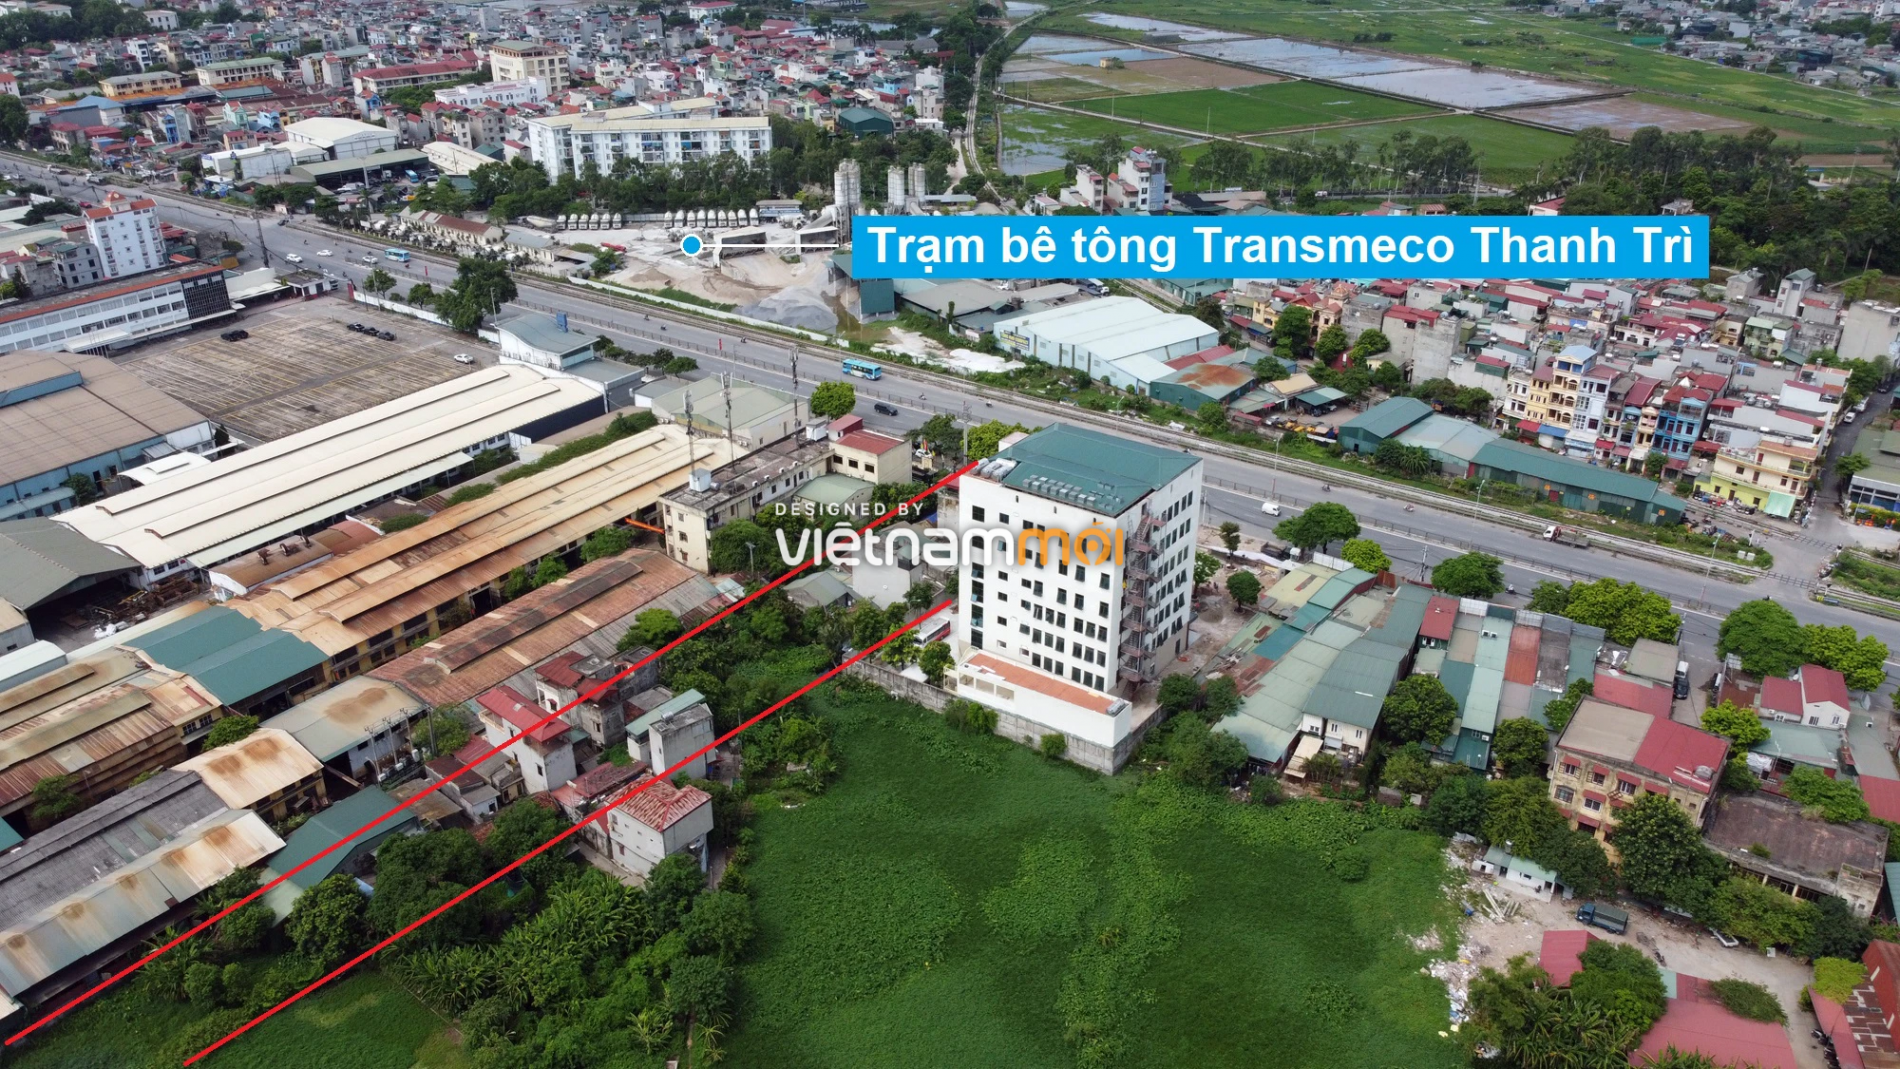 Những khu đất sắp thu hồi để mở đường ở xã Tứ Hiệp, Thanh Trì, Hà Nội (phần 3) - Ảnh 3.